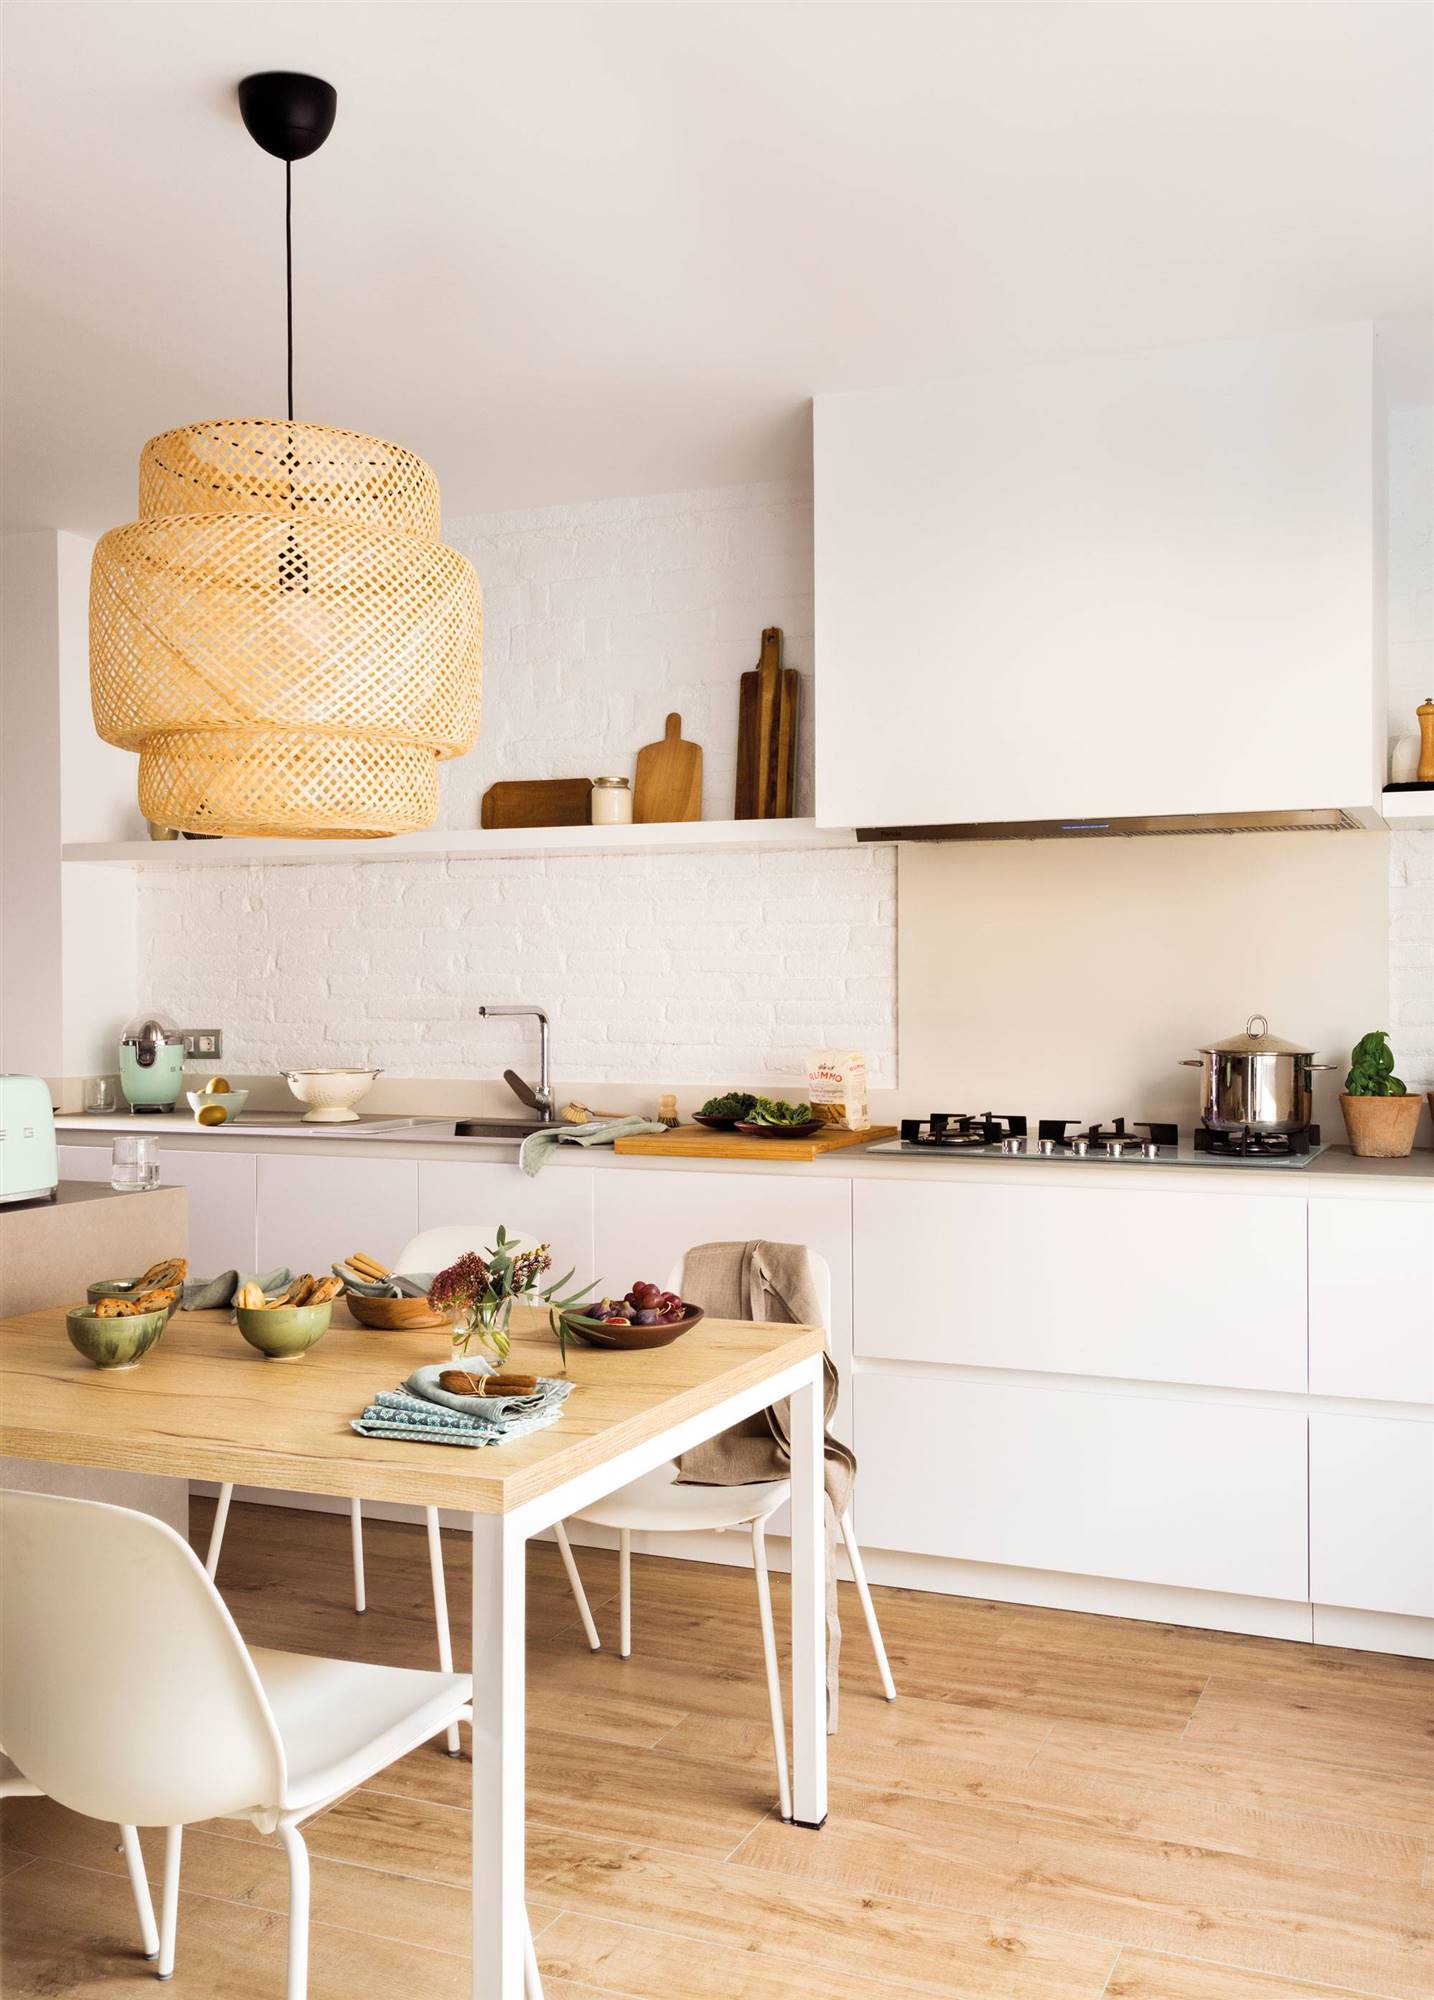 Cocina blanca nórdica con office y una lámpara suspendida de fibras naturales 00472319